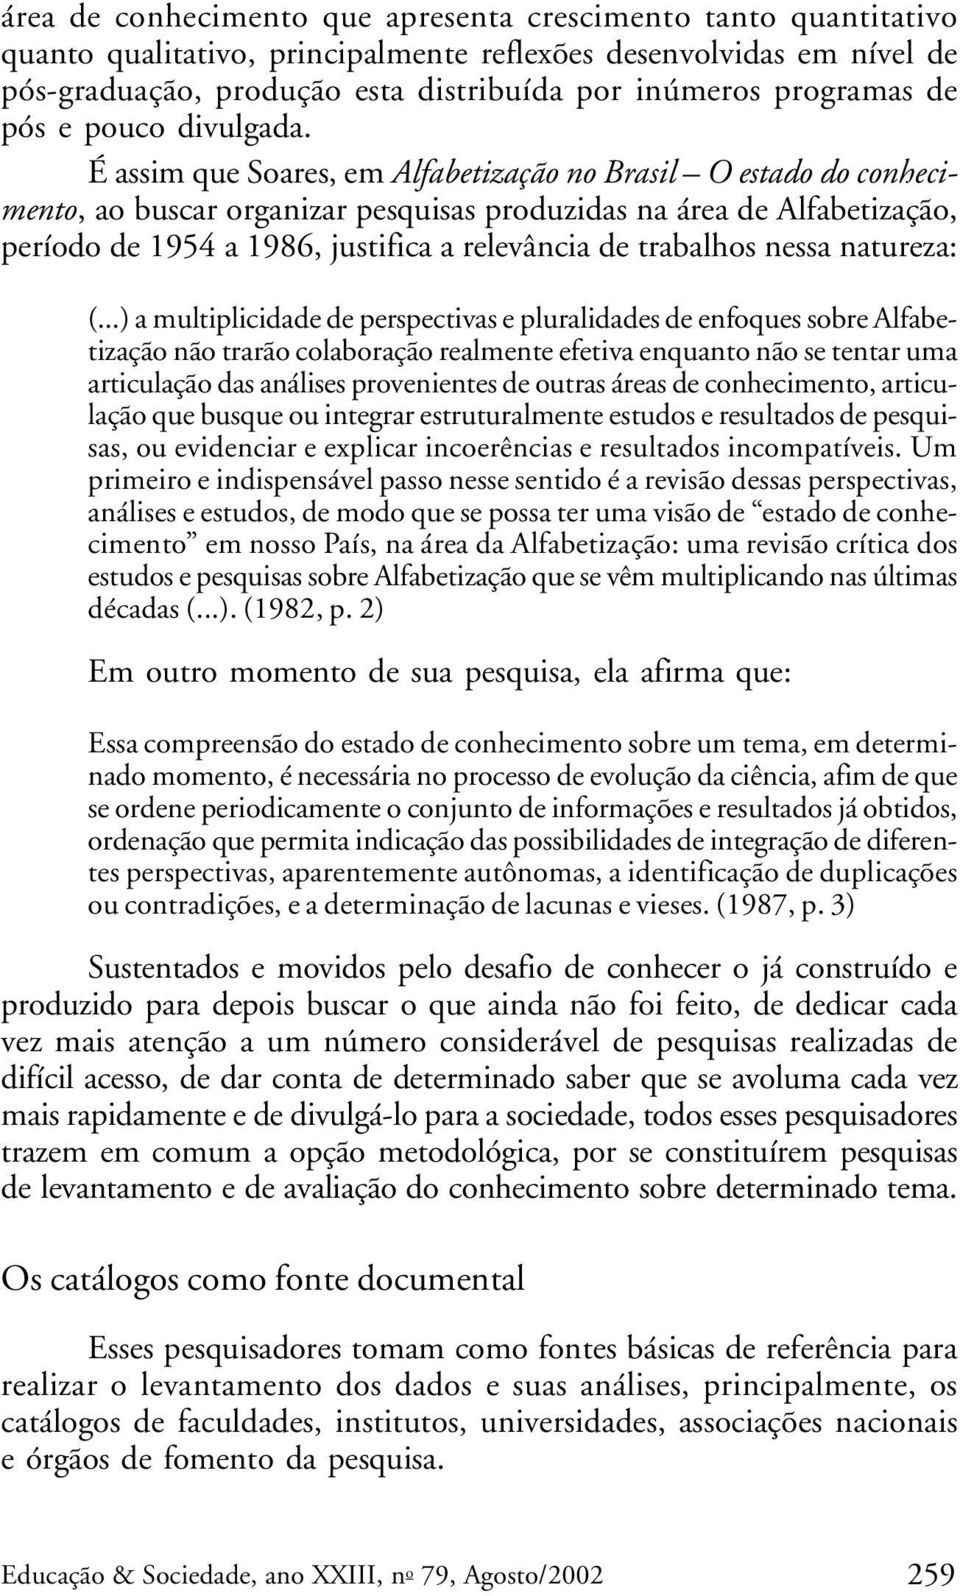 É assim que Soares, em Alfabetização no Brasil O estado do conhecimento, ao buscar organizar pesquisas produzidas na área de Alfabetização, período de 1954 a 1986, justifica a relevância de trabalhos